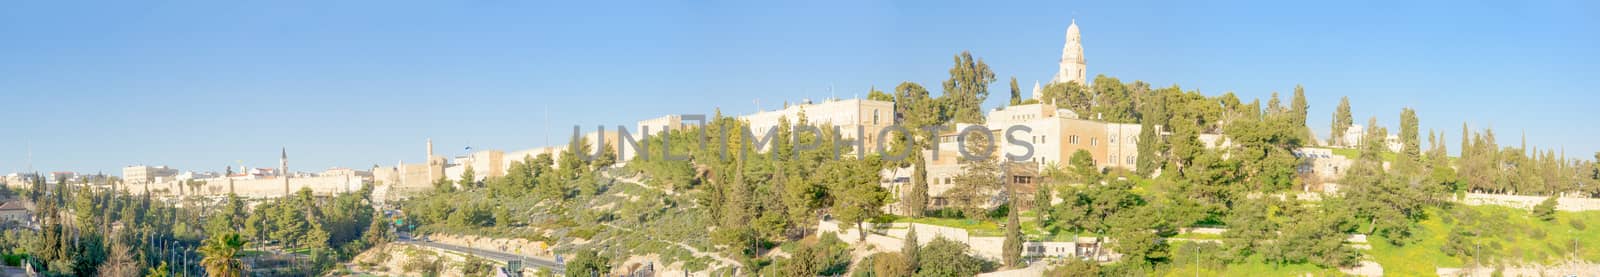 Jerusalem old city and Mount Zion by RnDmS